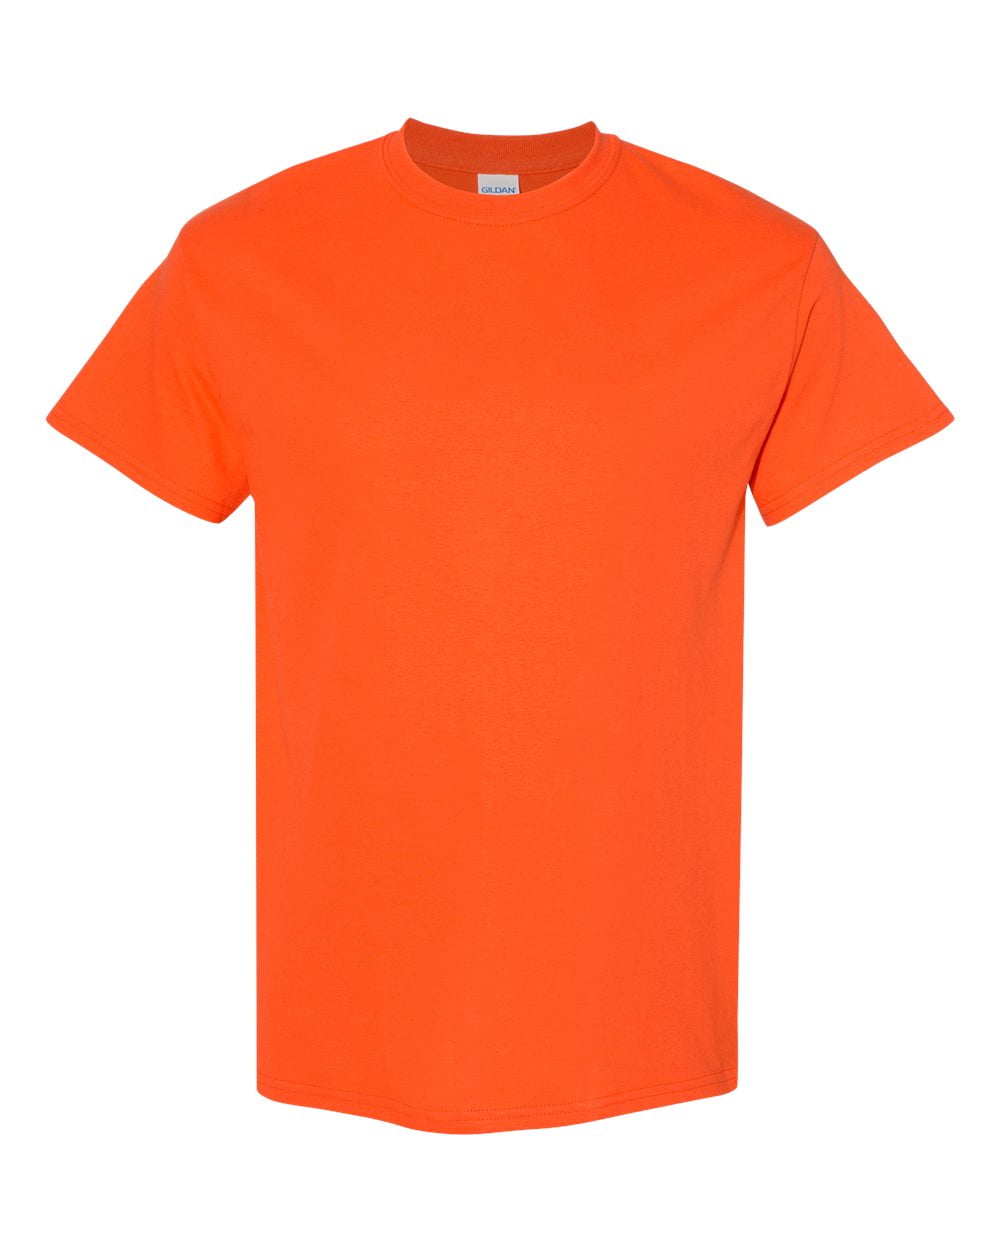 OXI - Men Heavy Cotton Multi Colors T-Shirt Color Orange 3X-Large Size ...